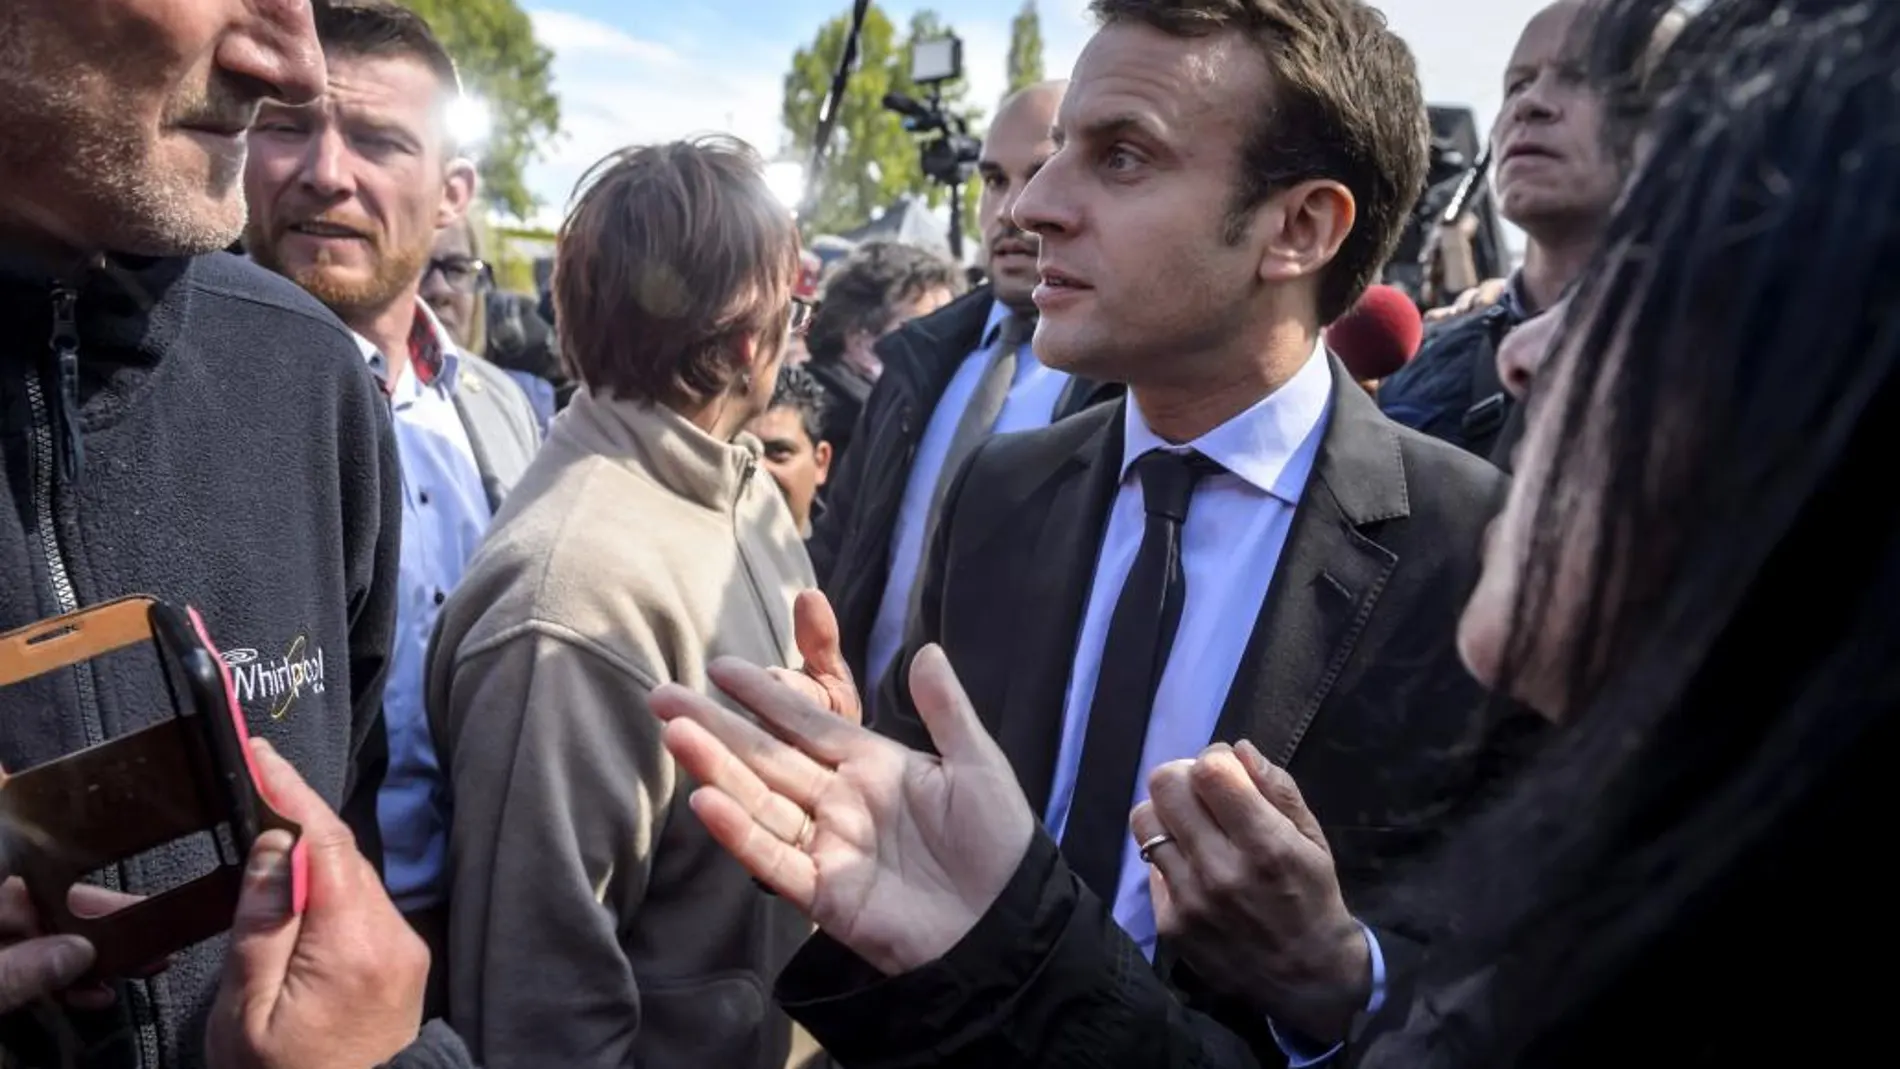 Emmanuel Macron durante un encuentro con el personal de la plantilla de Whirlpool en el marco de su campaña electoral en Amiens, Francia, hoy 26 de abril de 2017.